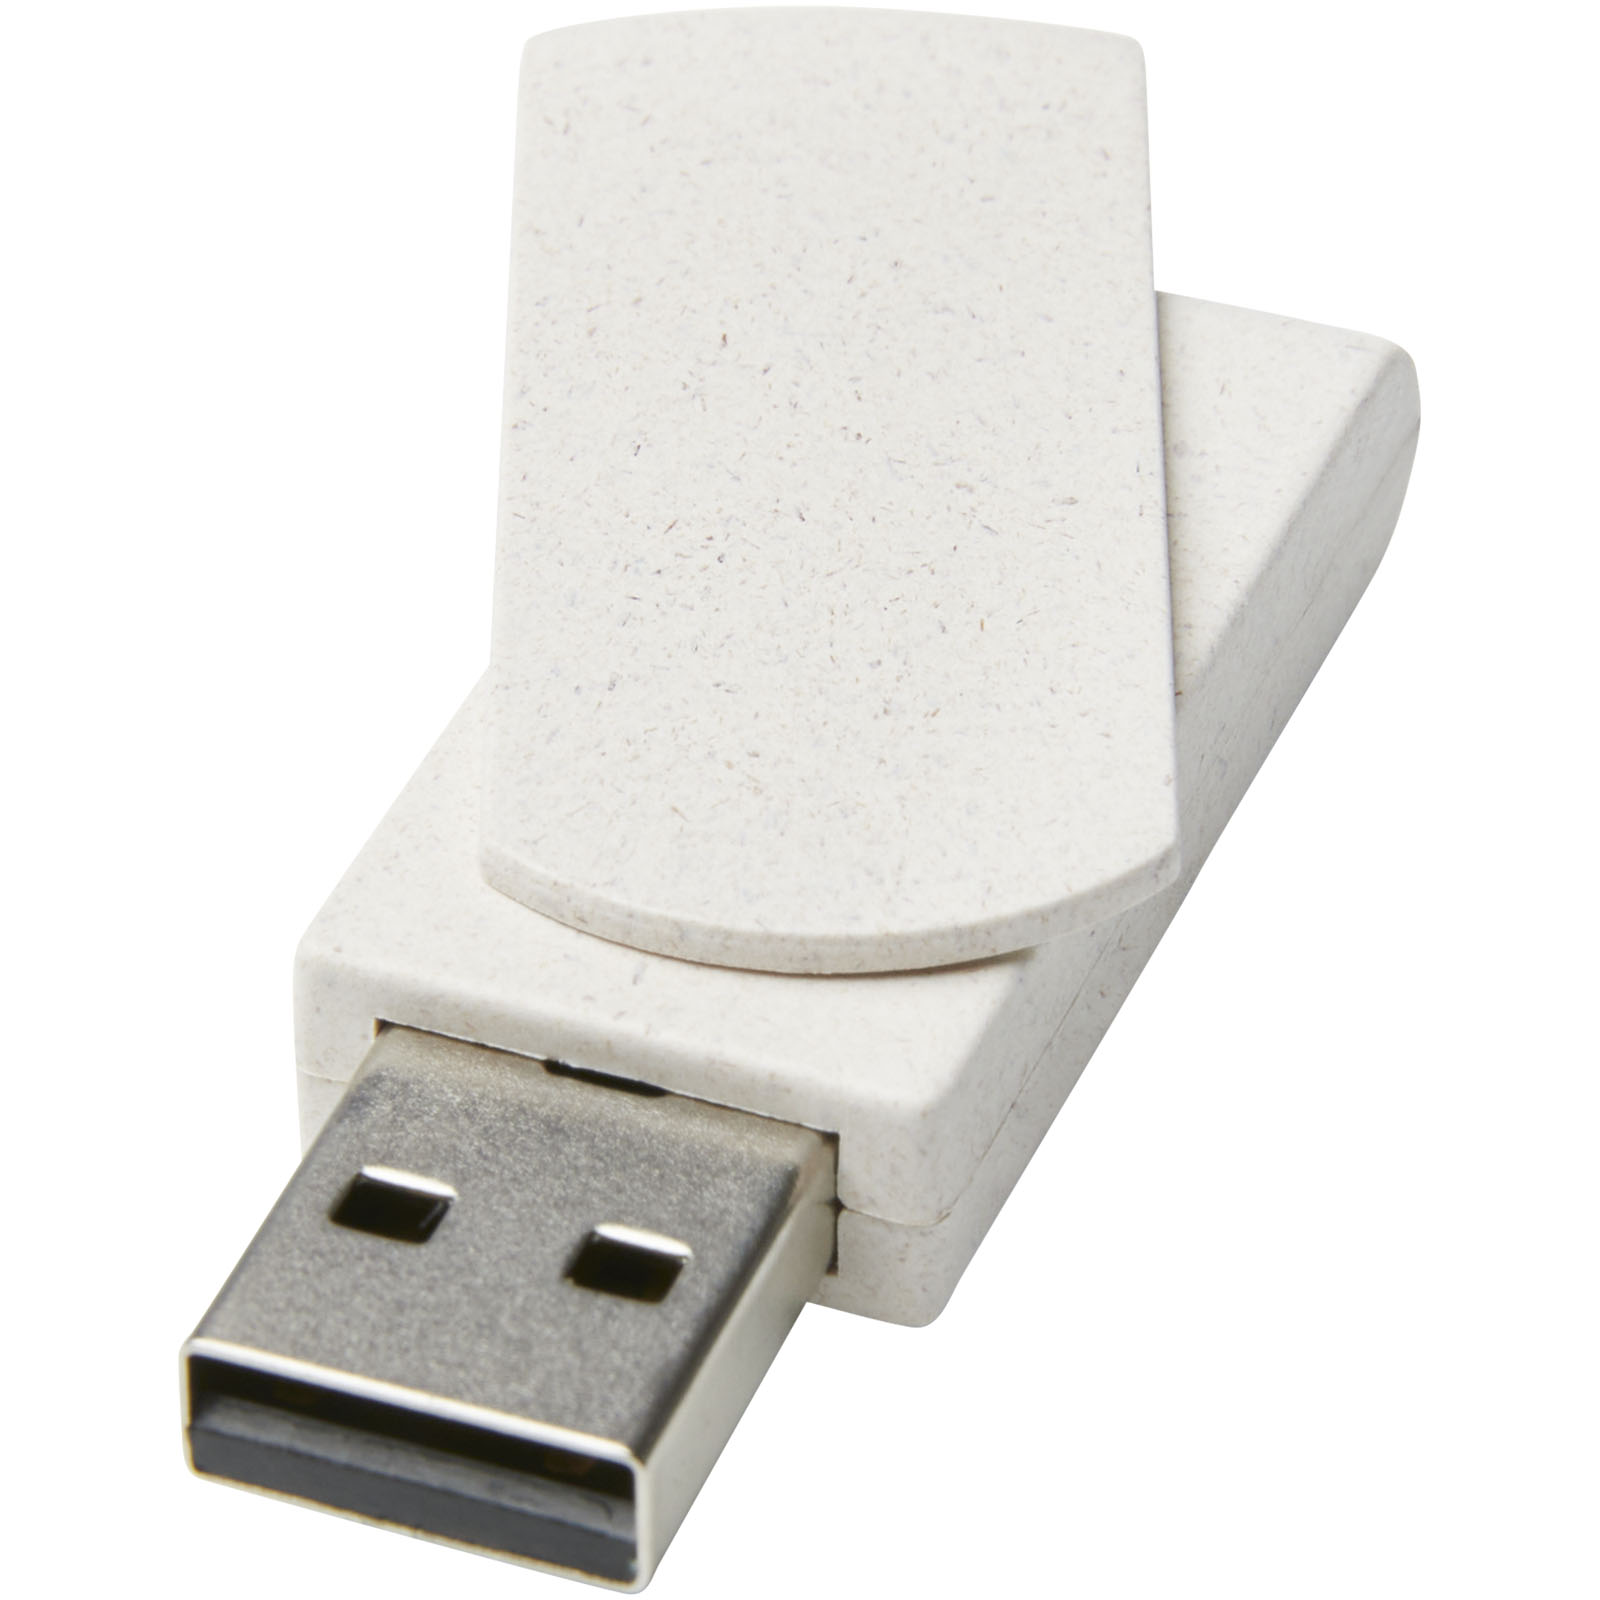 Clés USB - Clé USB Rotate 4 Go en paille de blé